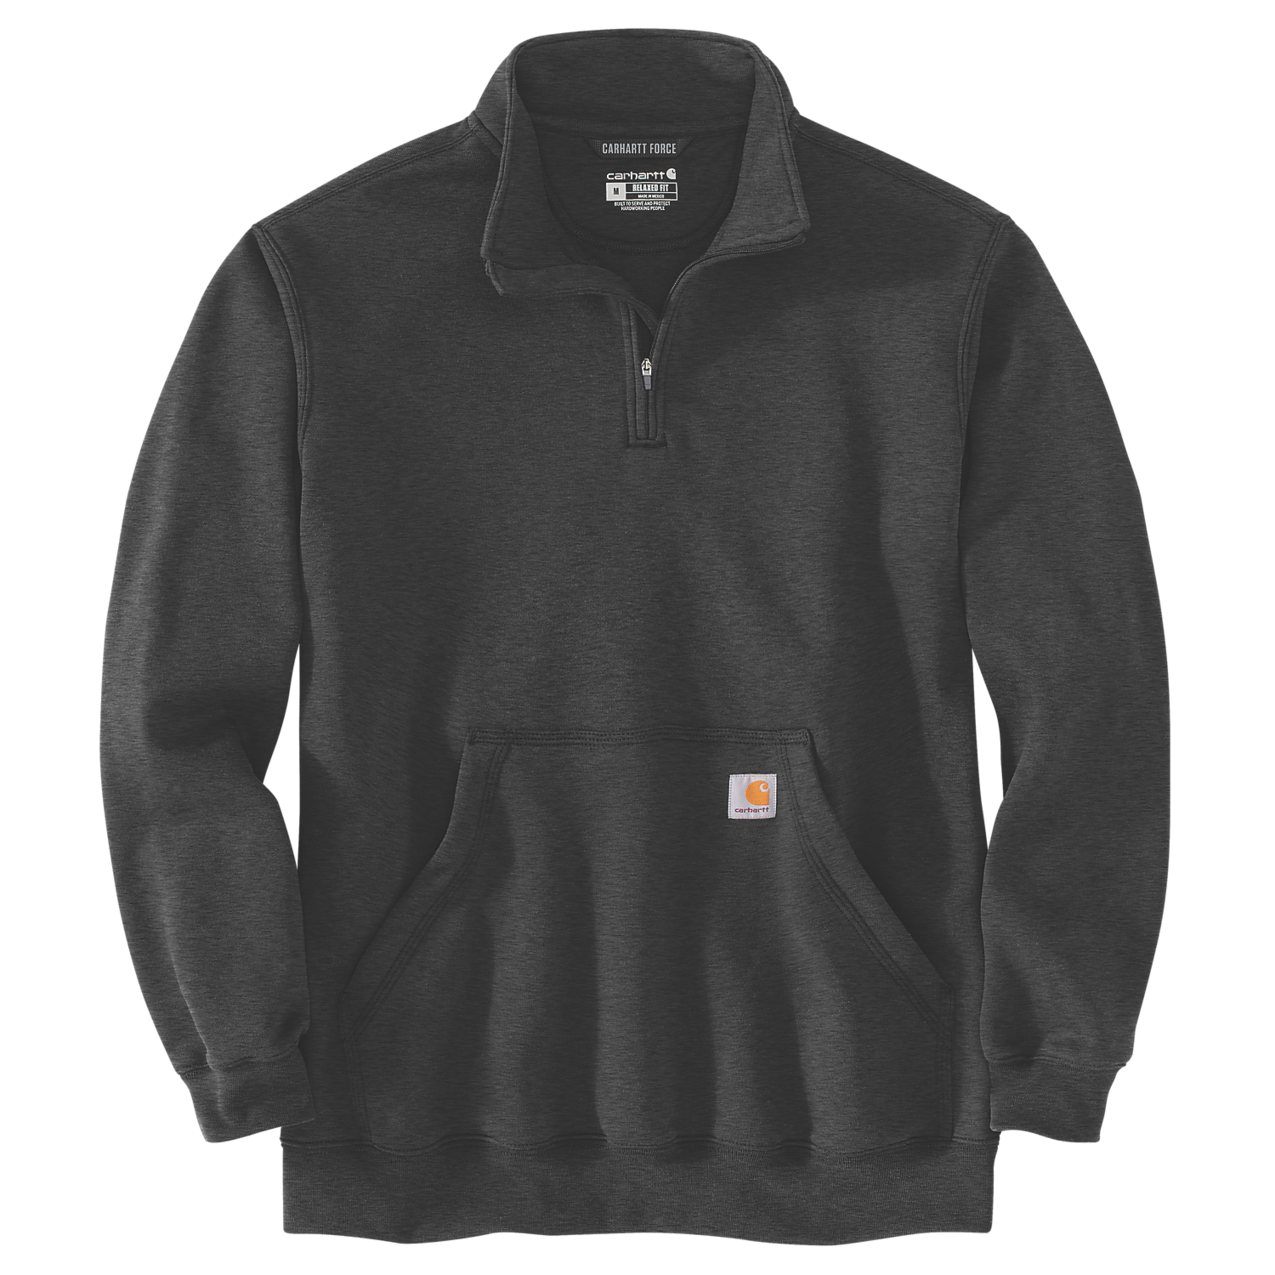 Carhartt Herren Sweatshirt Quarter Zip Mock Neck, Carbon (Grau)